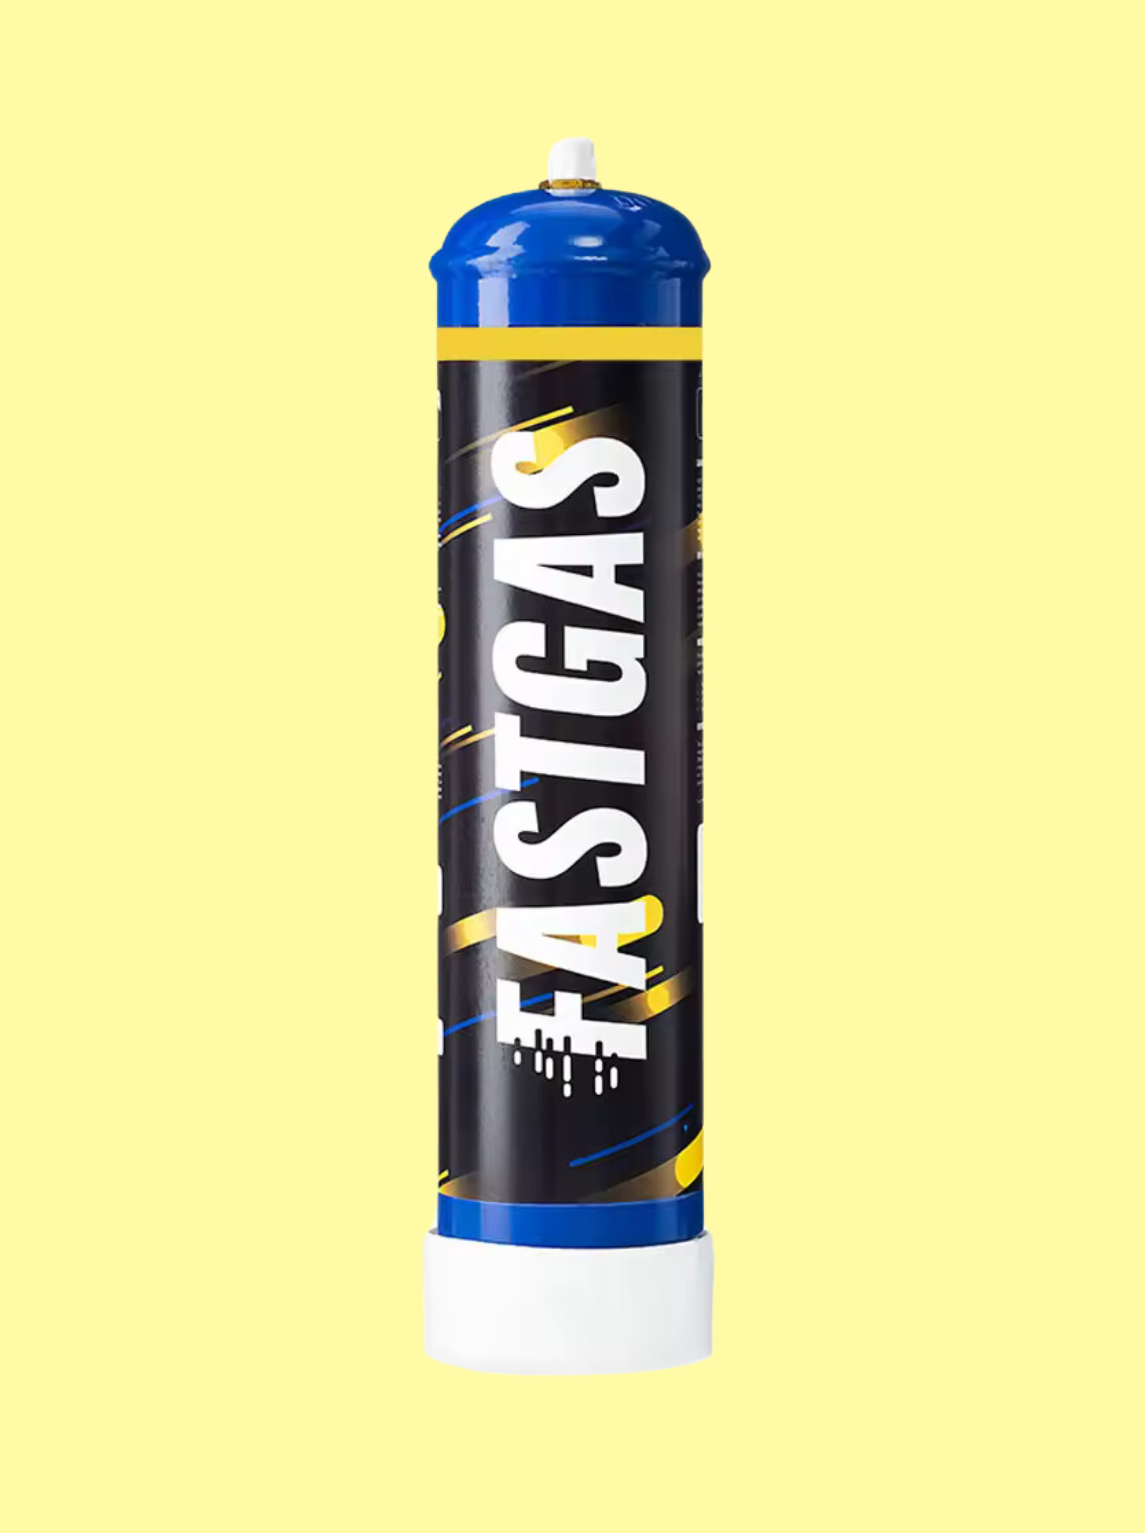 Die Gasflasche ist schwarz mit dem weißen Logo "Fastgas" 640g. Der Oberteil ist blau, der Unterteil weiß und die Flasche auch blau, gelb gestreift. Der Hintergrund ist hellgelb.